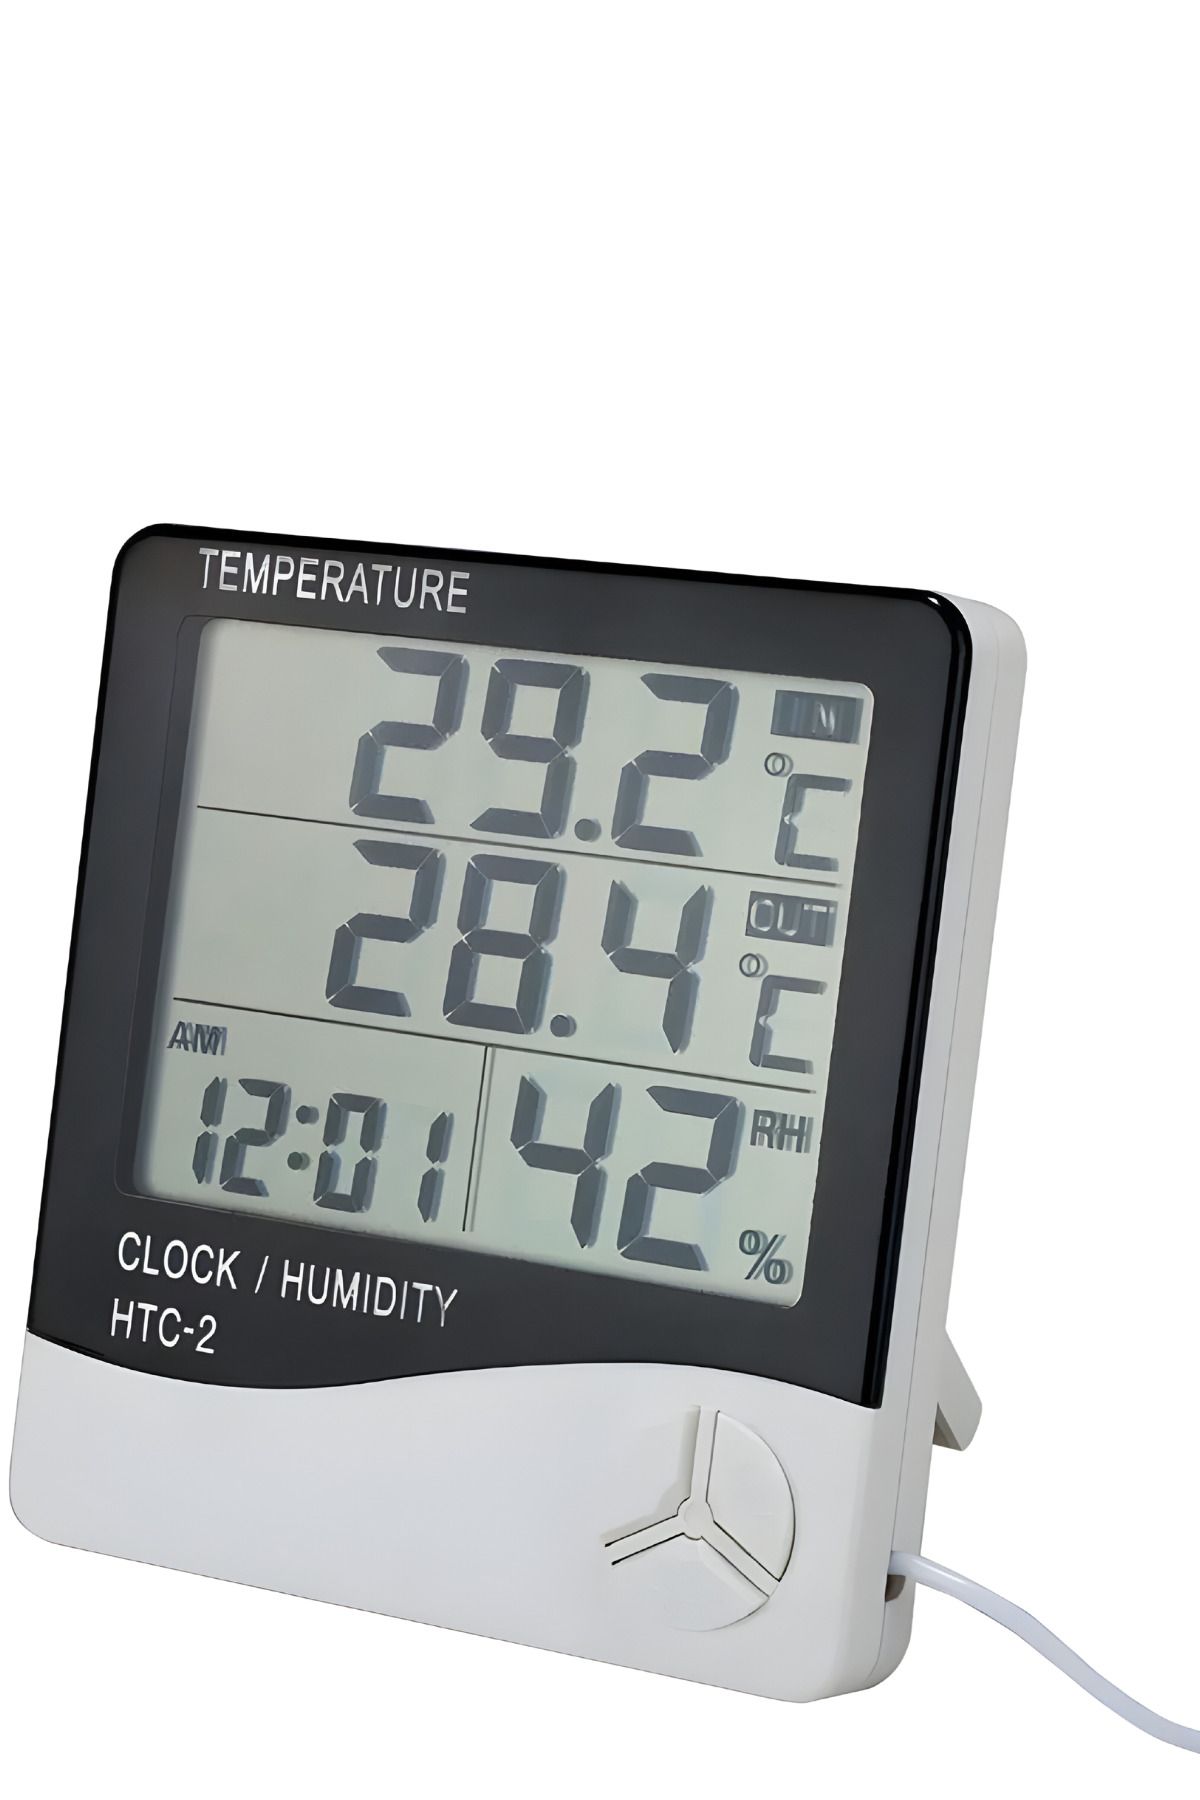 Htc -2 Masa Saati Derece Termometre Isı Nem Saat Alarm Dijital Termometre Nem Ölçer